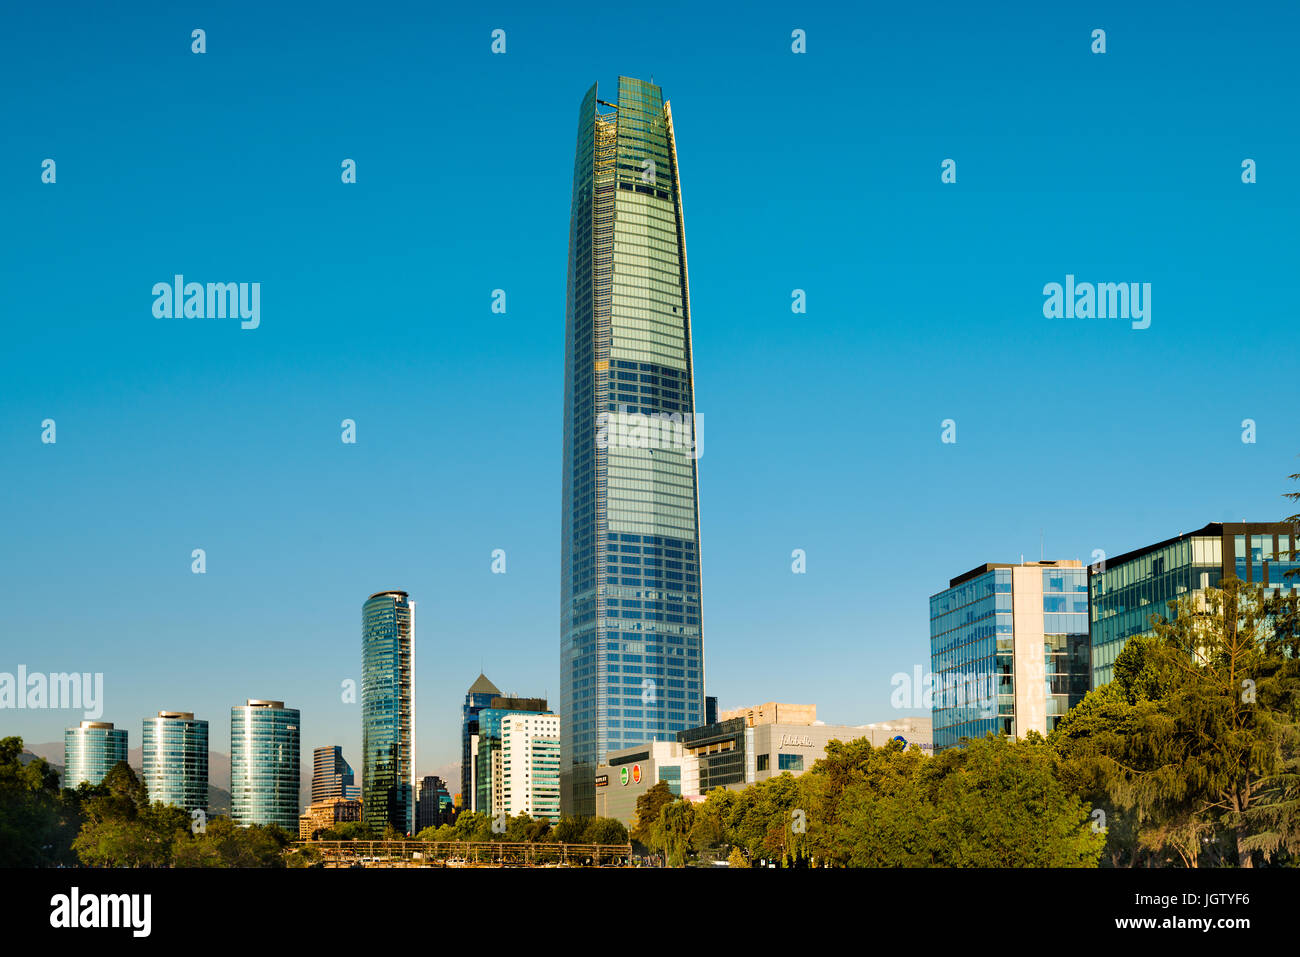 Santiago, Region Metropolitana, Chile - Skyline du quartier financier de Santiago populairement connu comme Sanhattan, Costanera avec C Banque D'Images